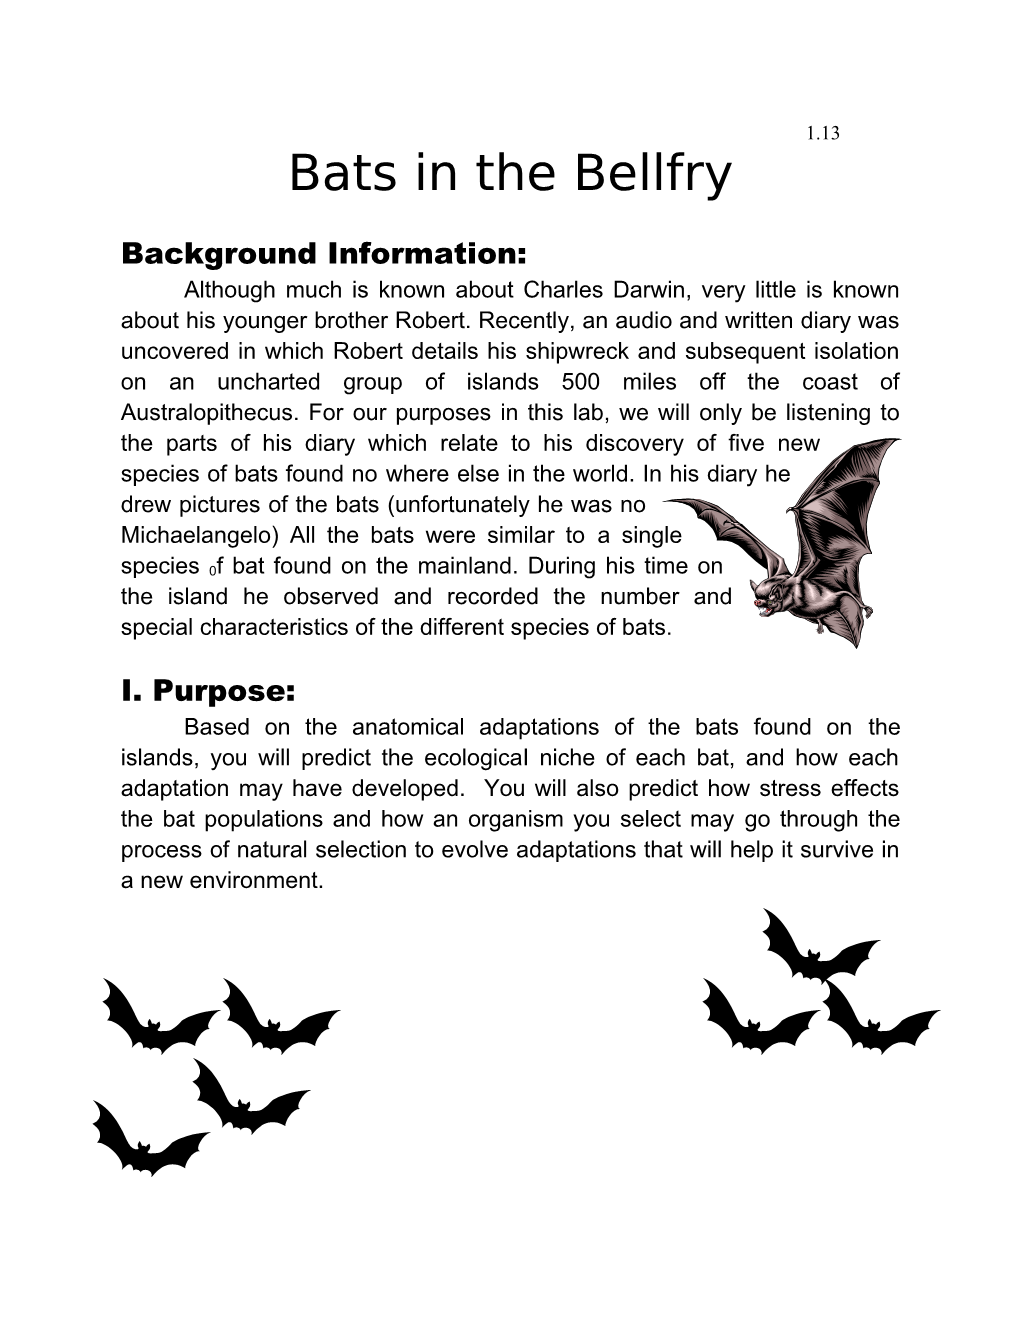 Bats in the Bellfry